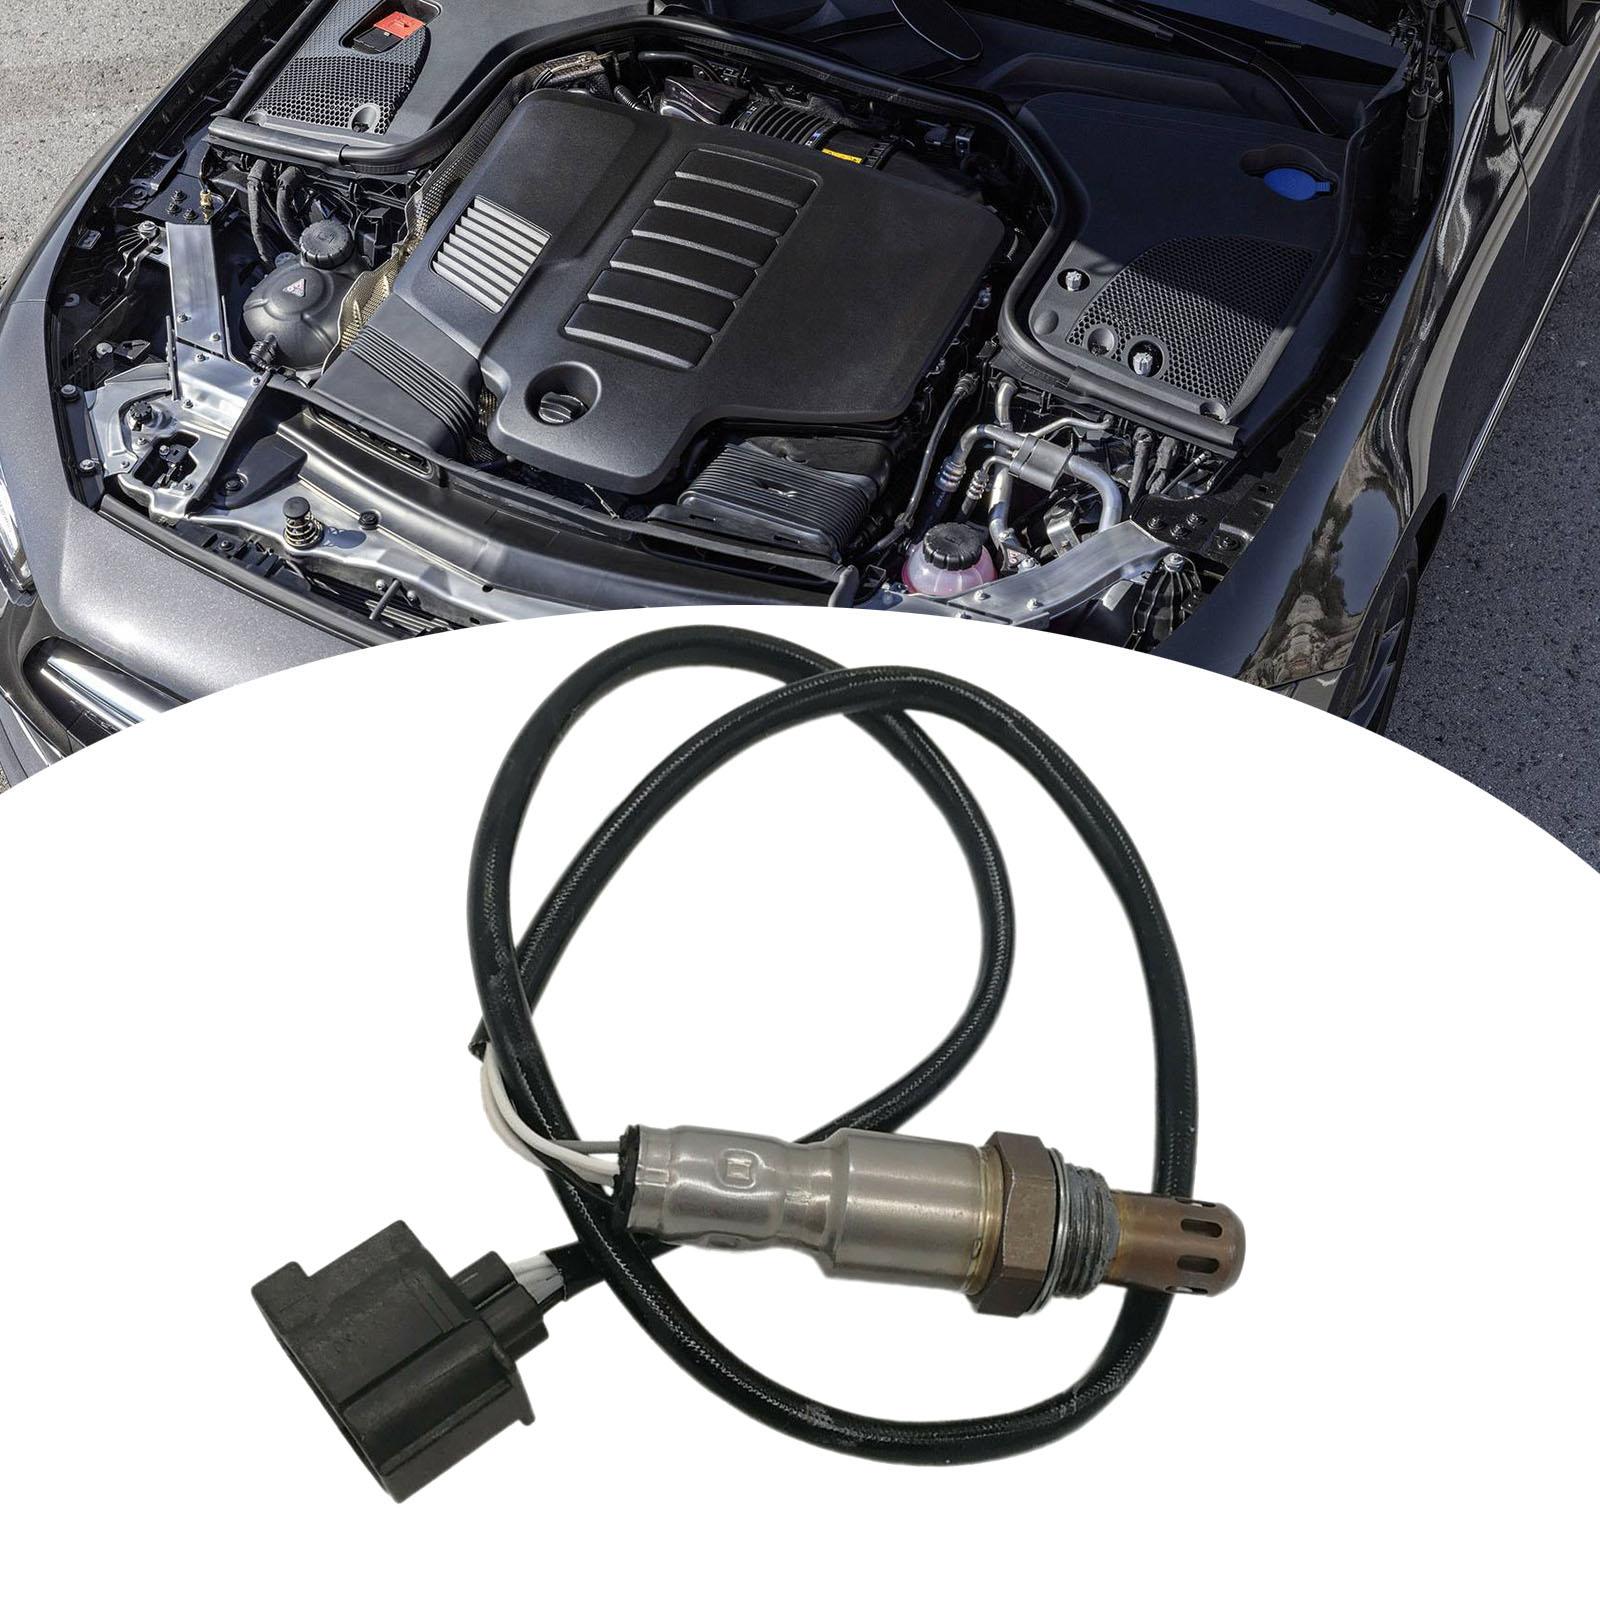 Air Fuel Ratio Sensor Durable for Mercedes-Benz W204 Replaces Repair